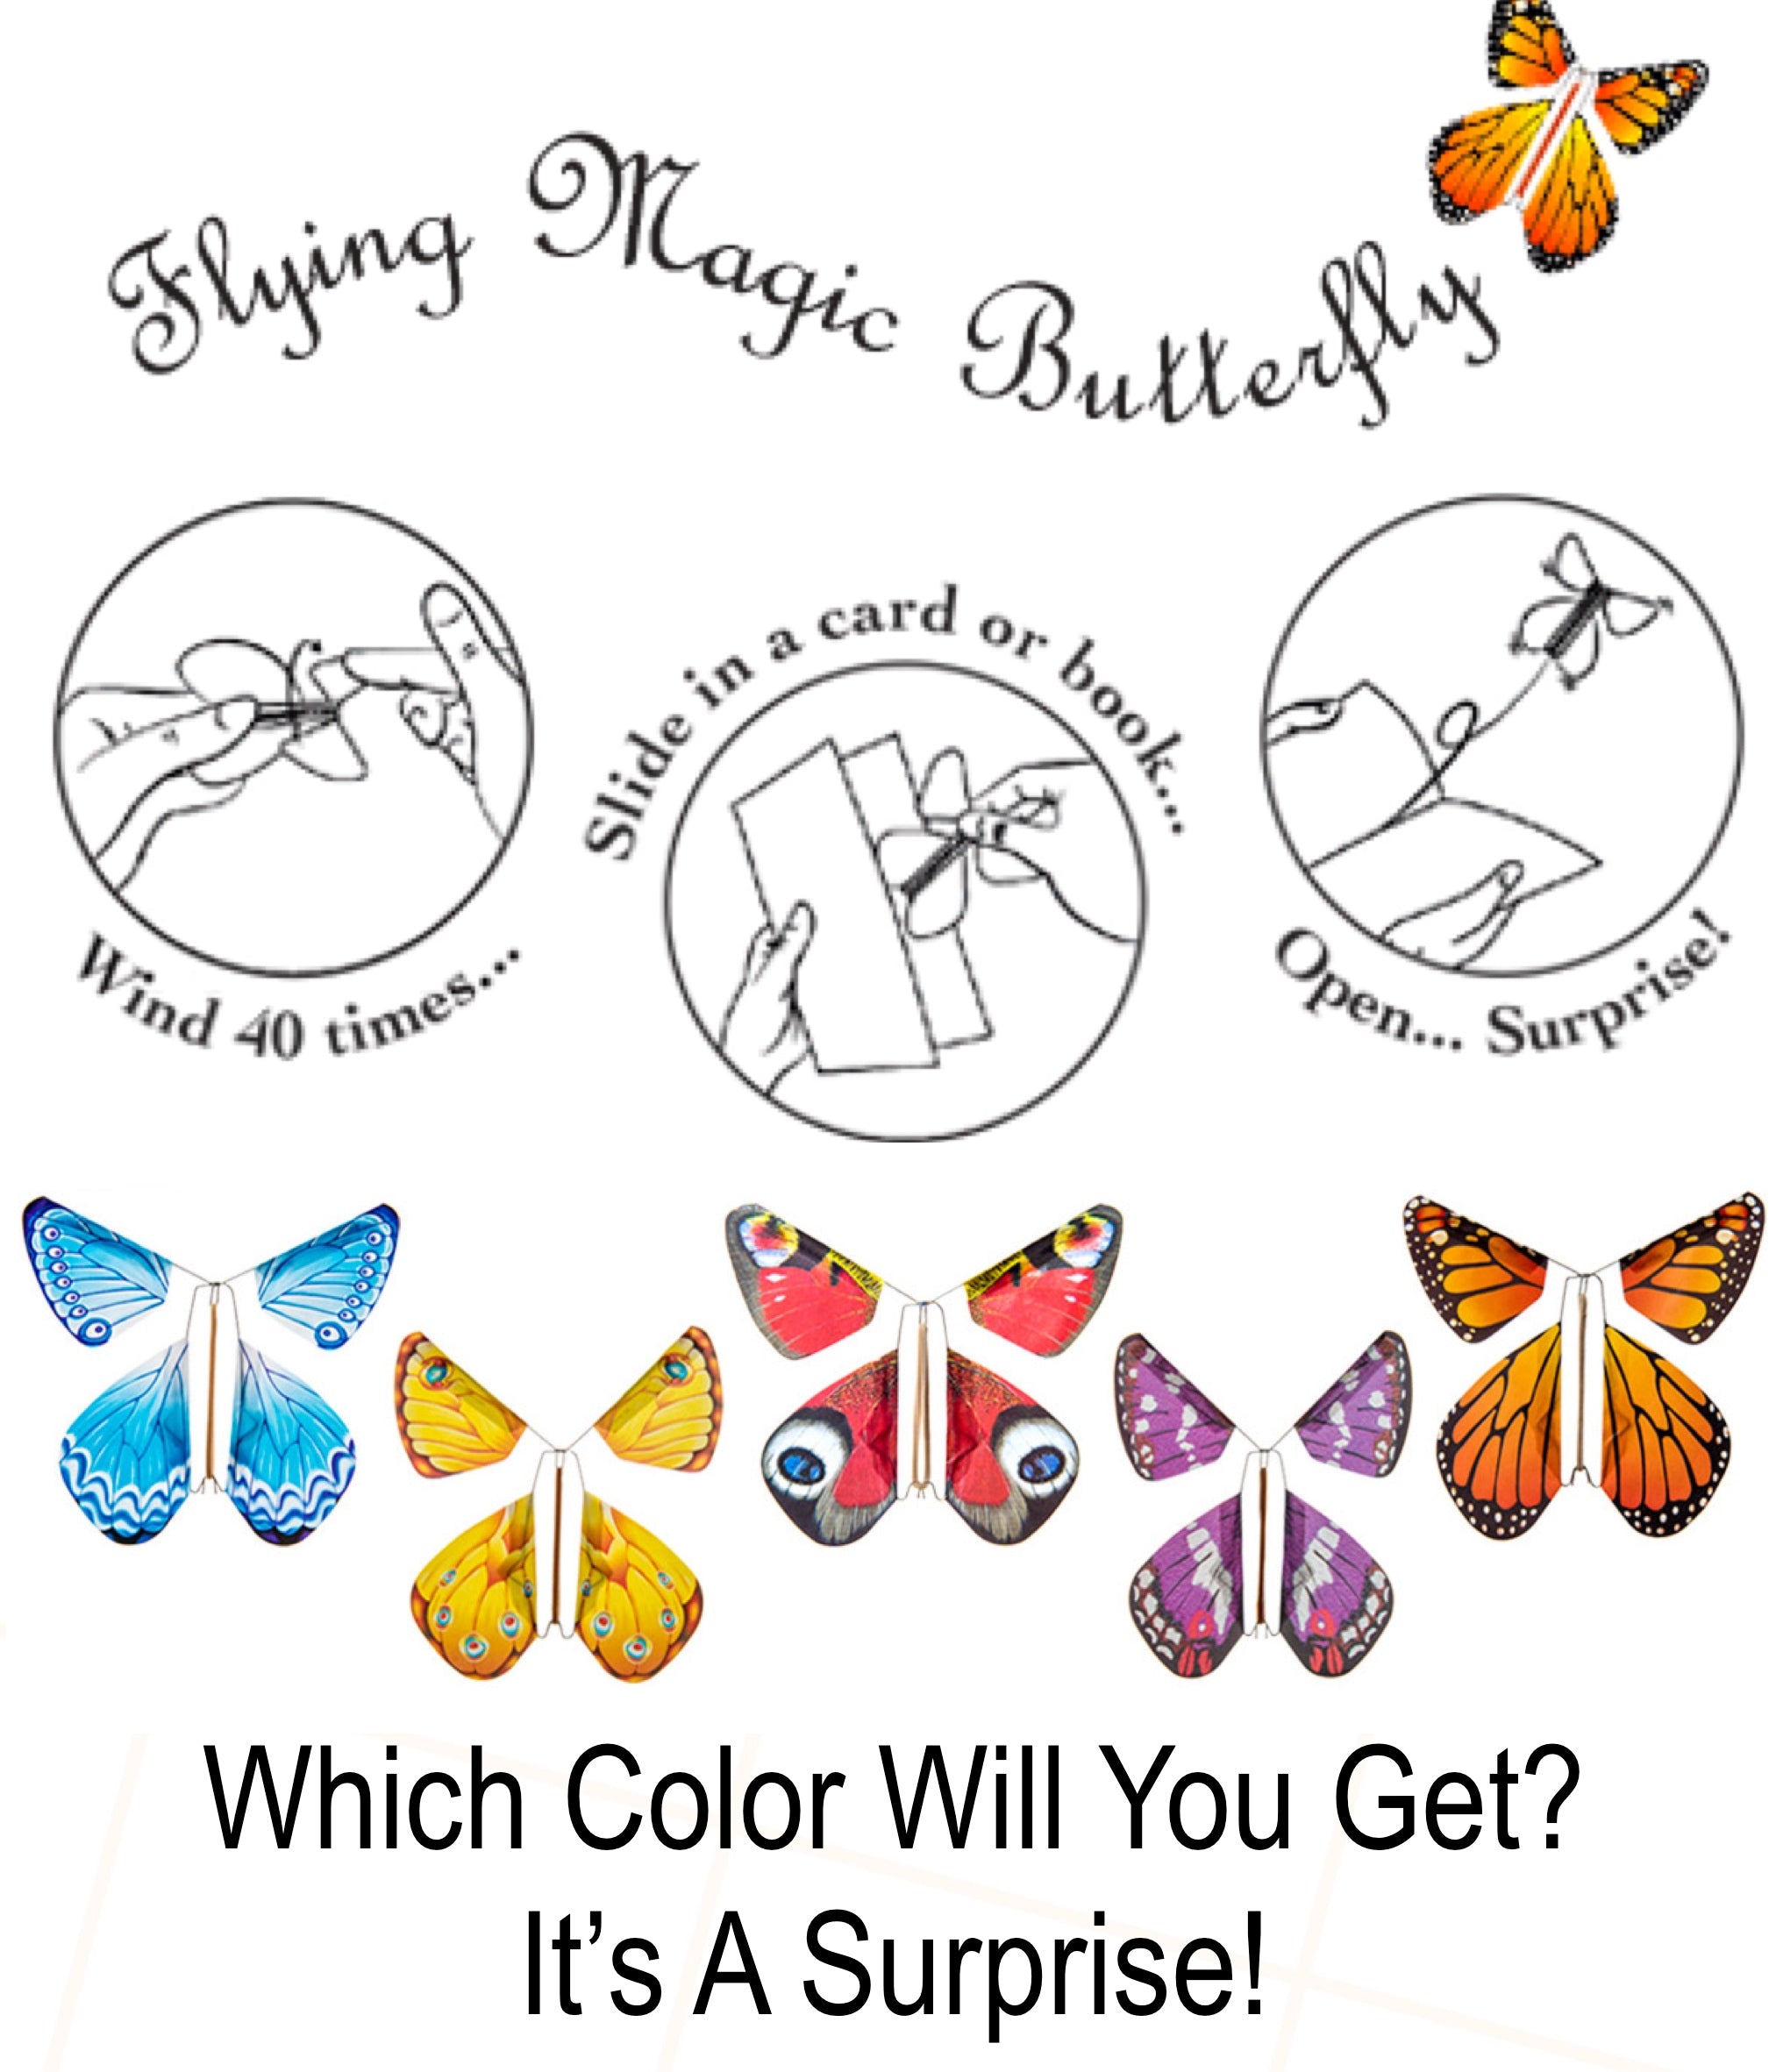 The Magic Butterfly - Plunkett's Hallmark